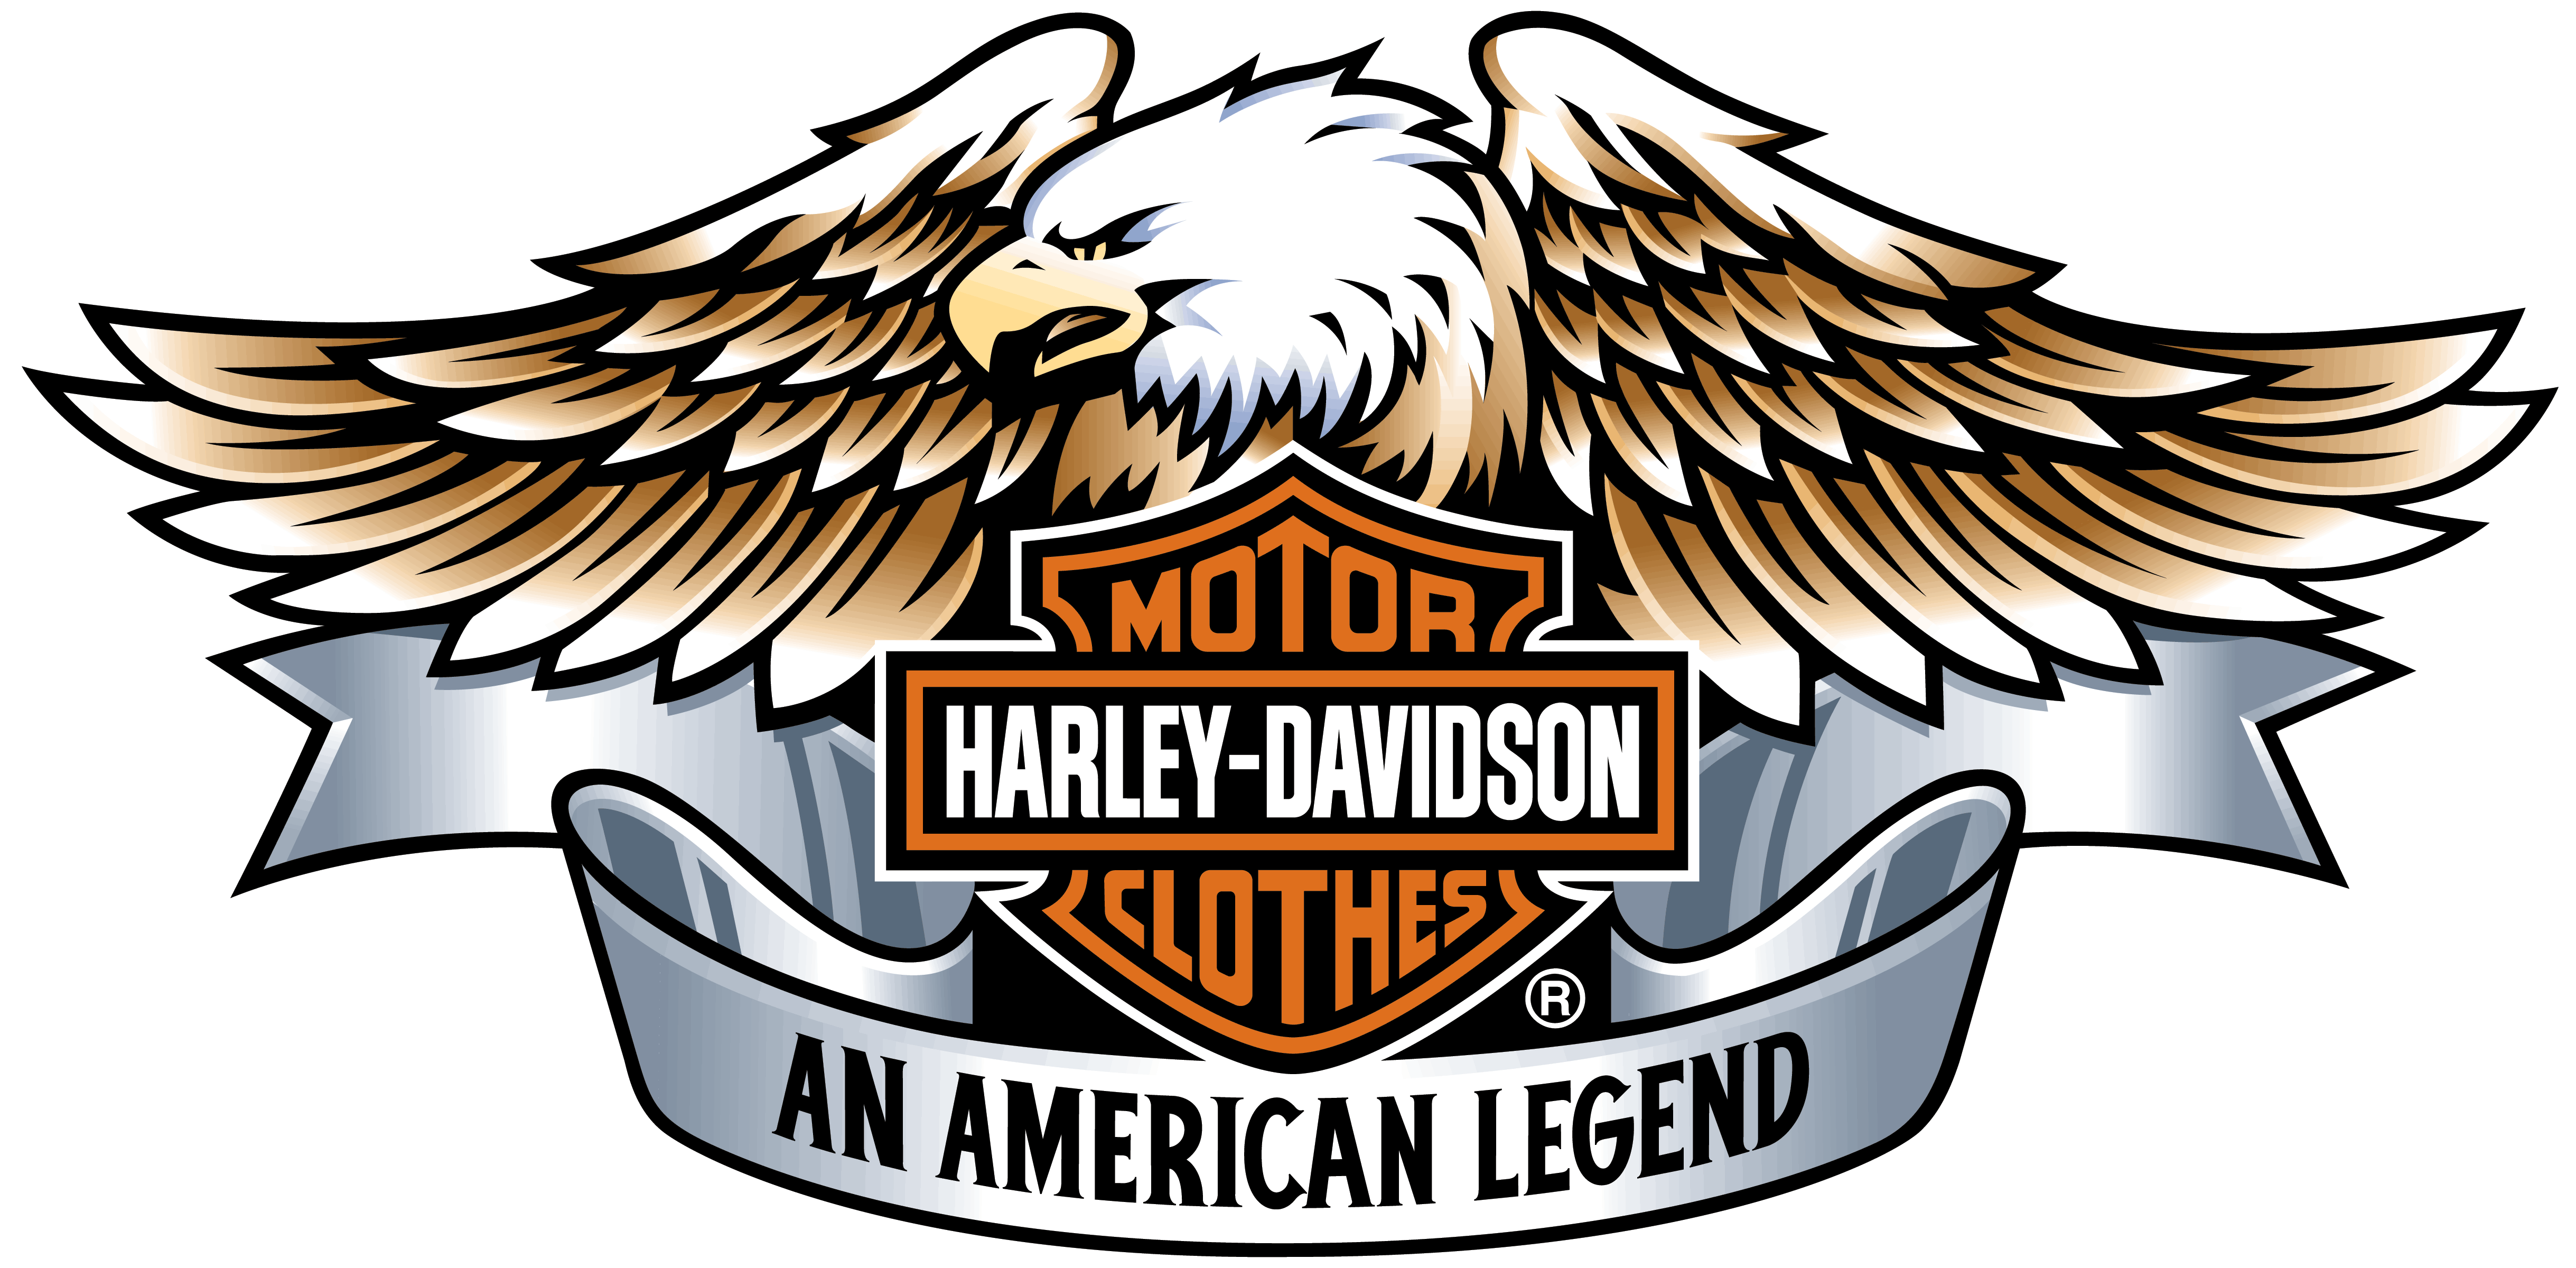 Harley Davidson Logos Free 